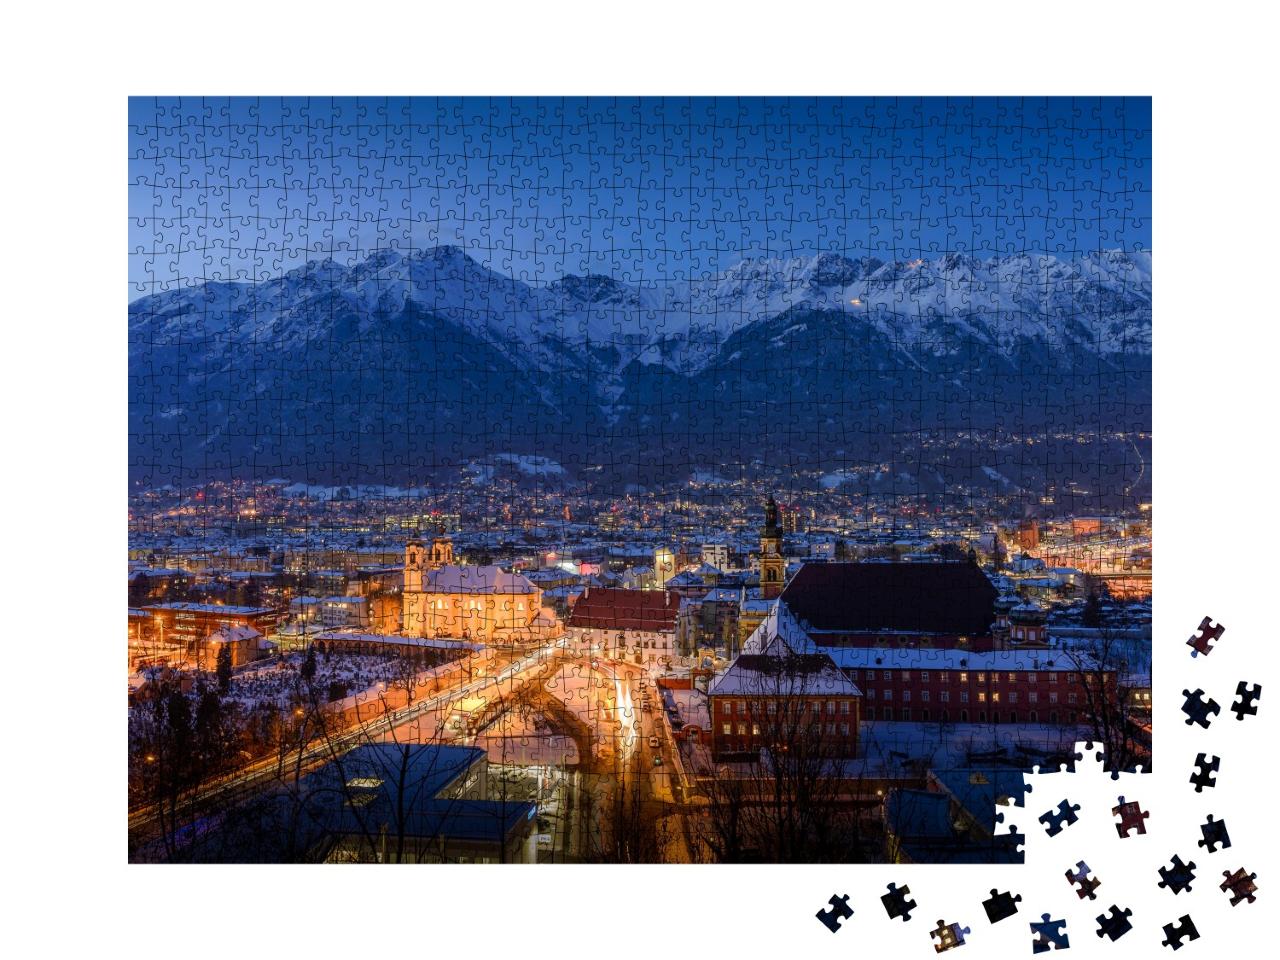 Puzzle 1000 Teile „Winterliches Innsbruck bei Nacht, Österreich“